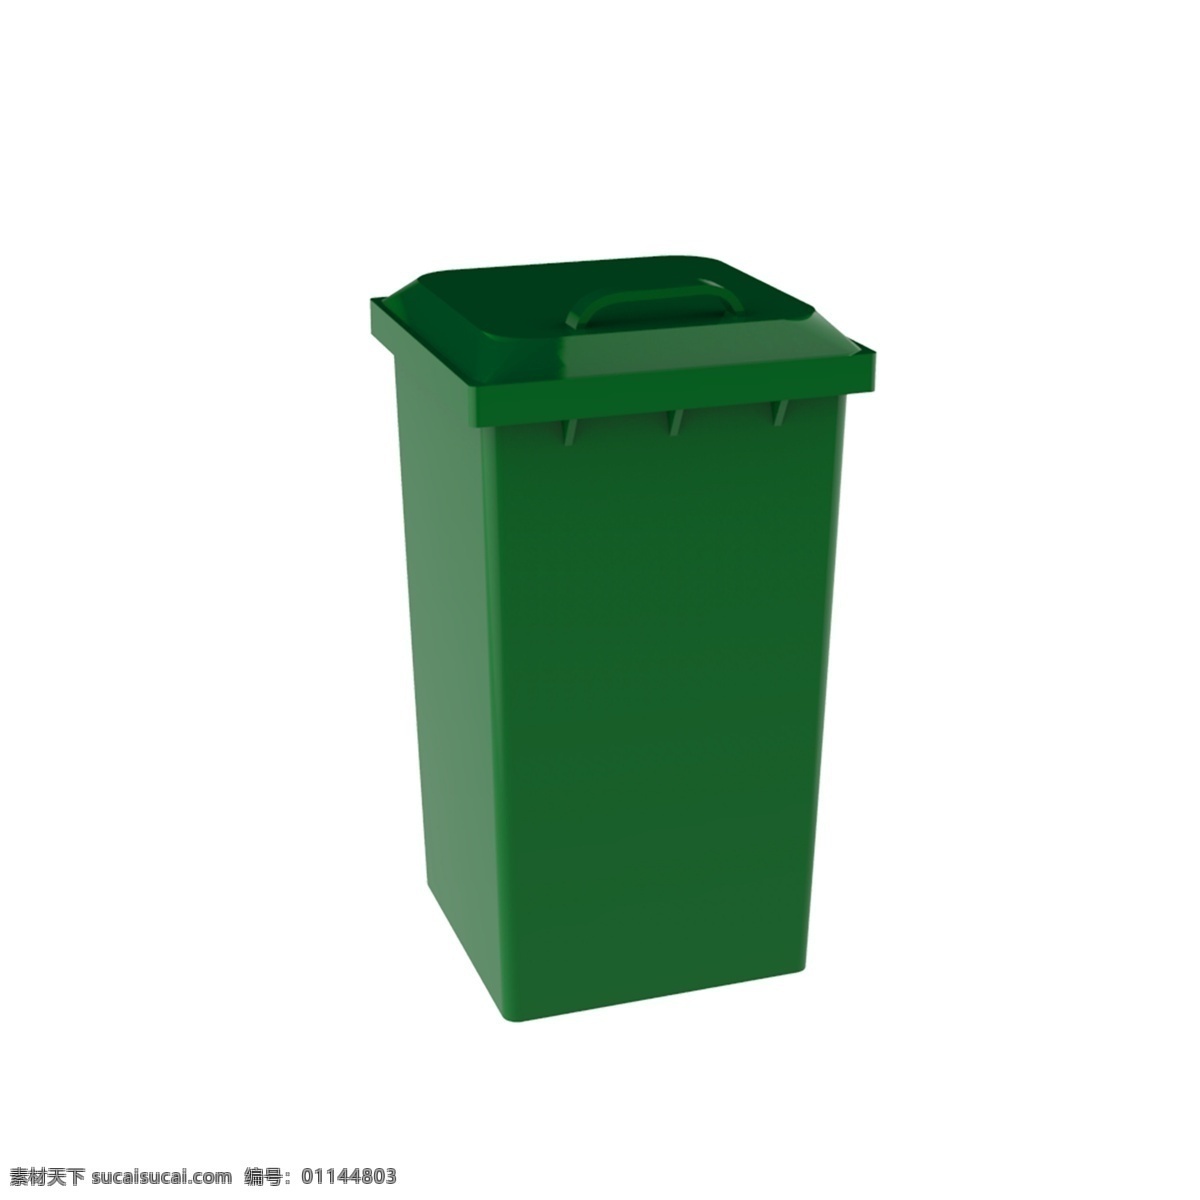 仿真垃圾桶 垃圾桶 绿色 垃圾分类